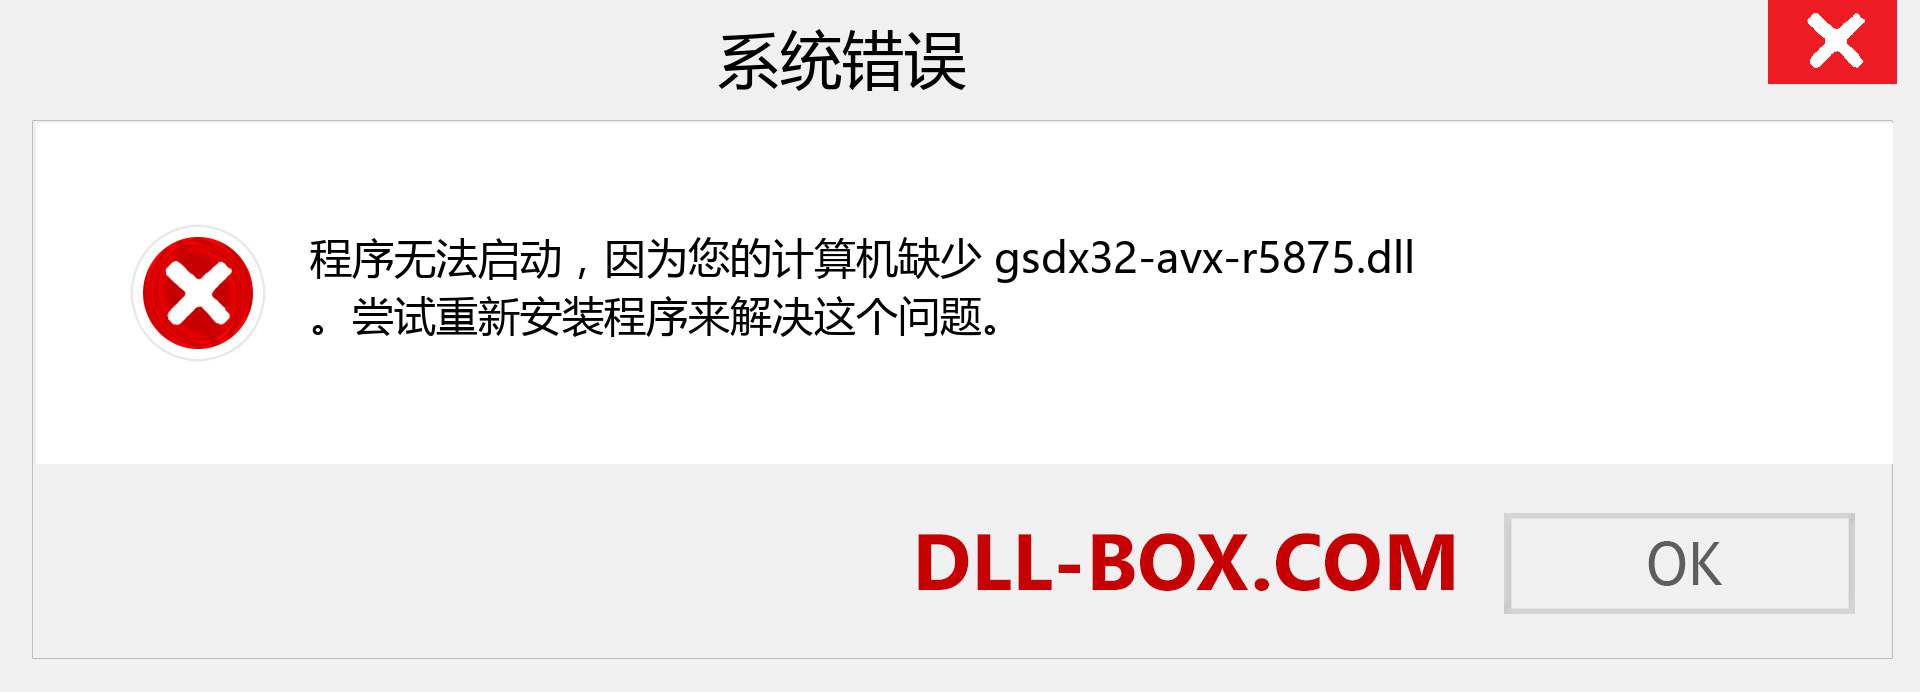 gsdx32-avx-r5875.dll 文件丢失？。 适用于 Windows 7、8、10 的下载 - 修复 Windows、照片、图像上的 gsdx32-avx-r5875 dll 丢失错误